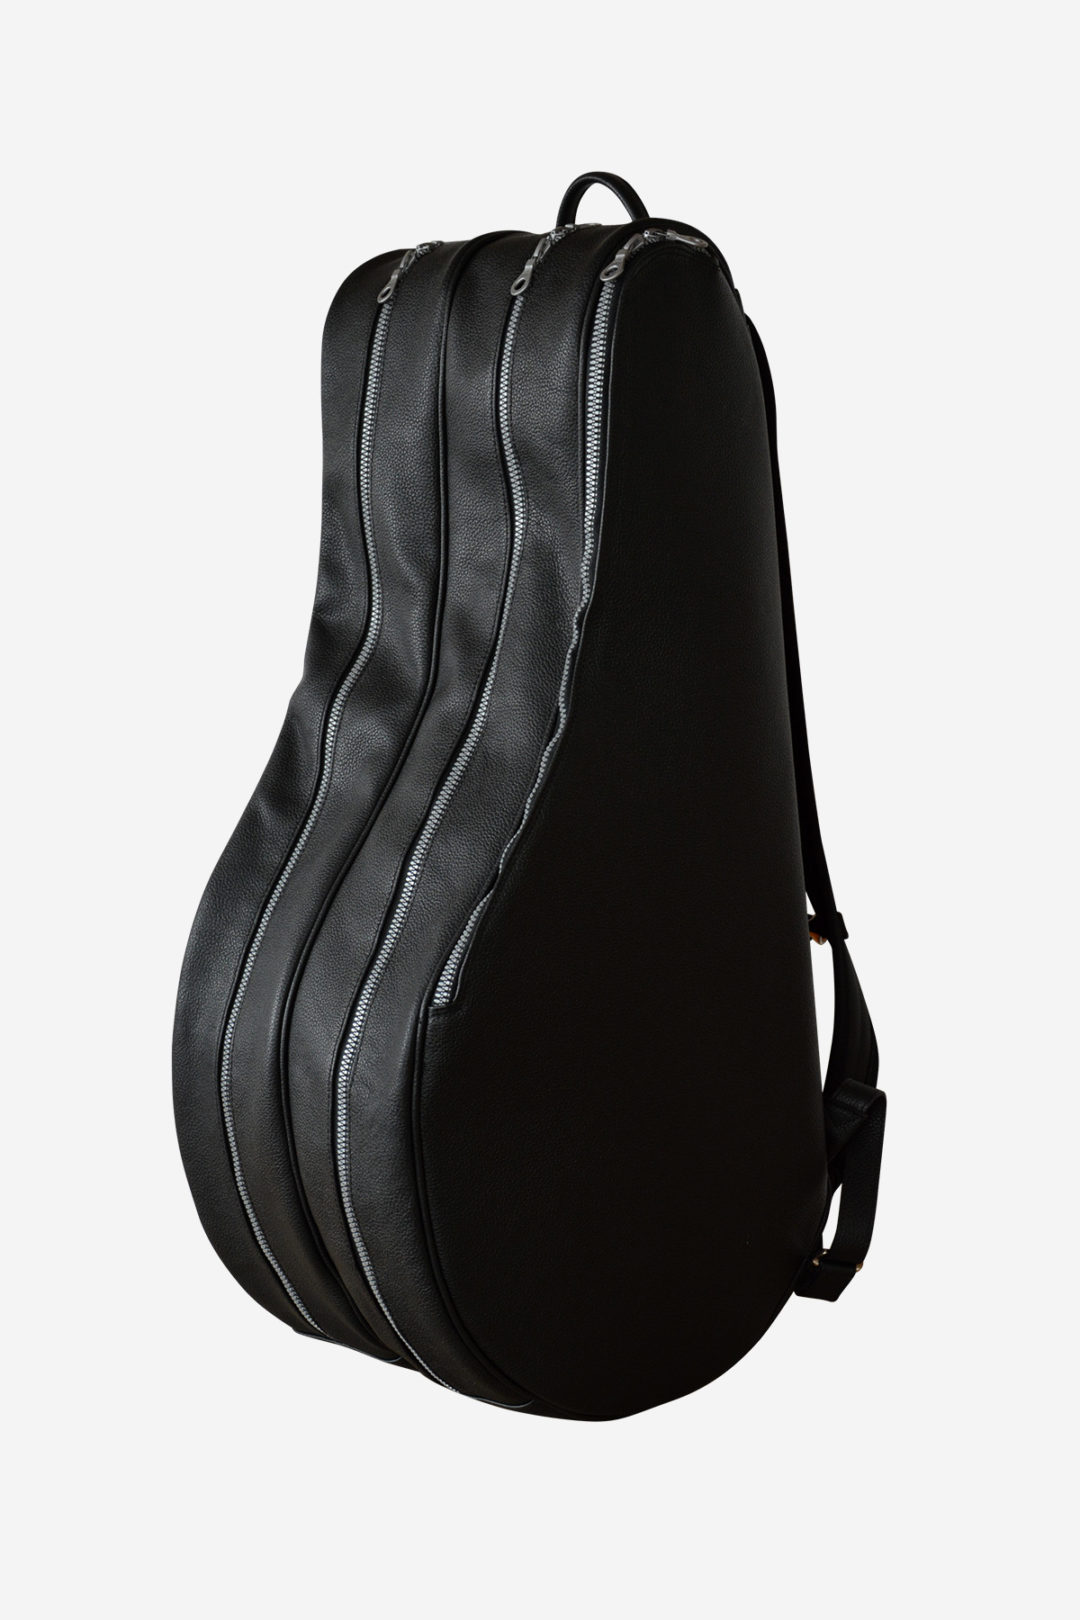 Wide Backpack Tennis Bag black leather waterproof handmade in italy